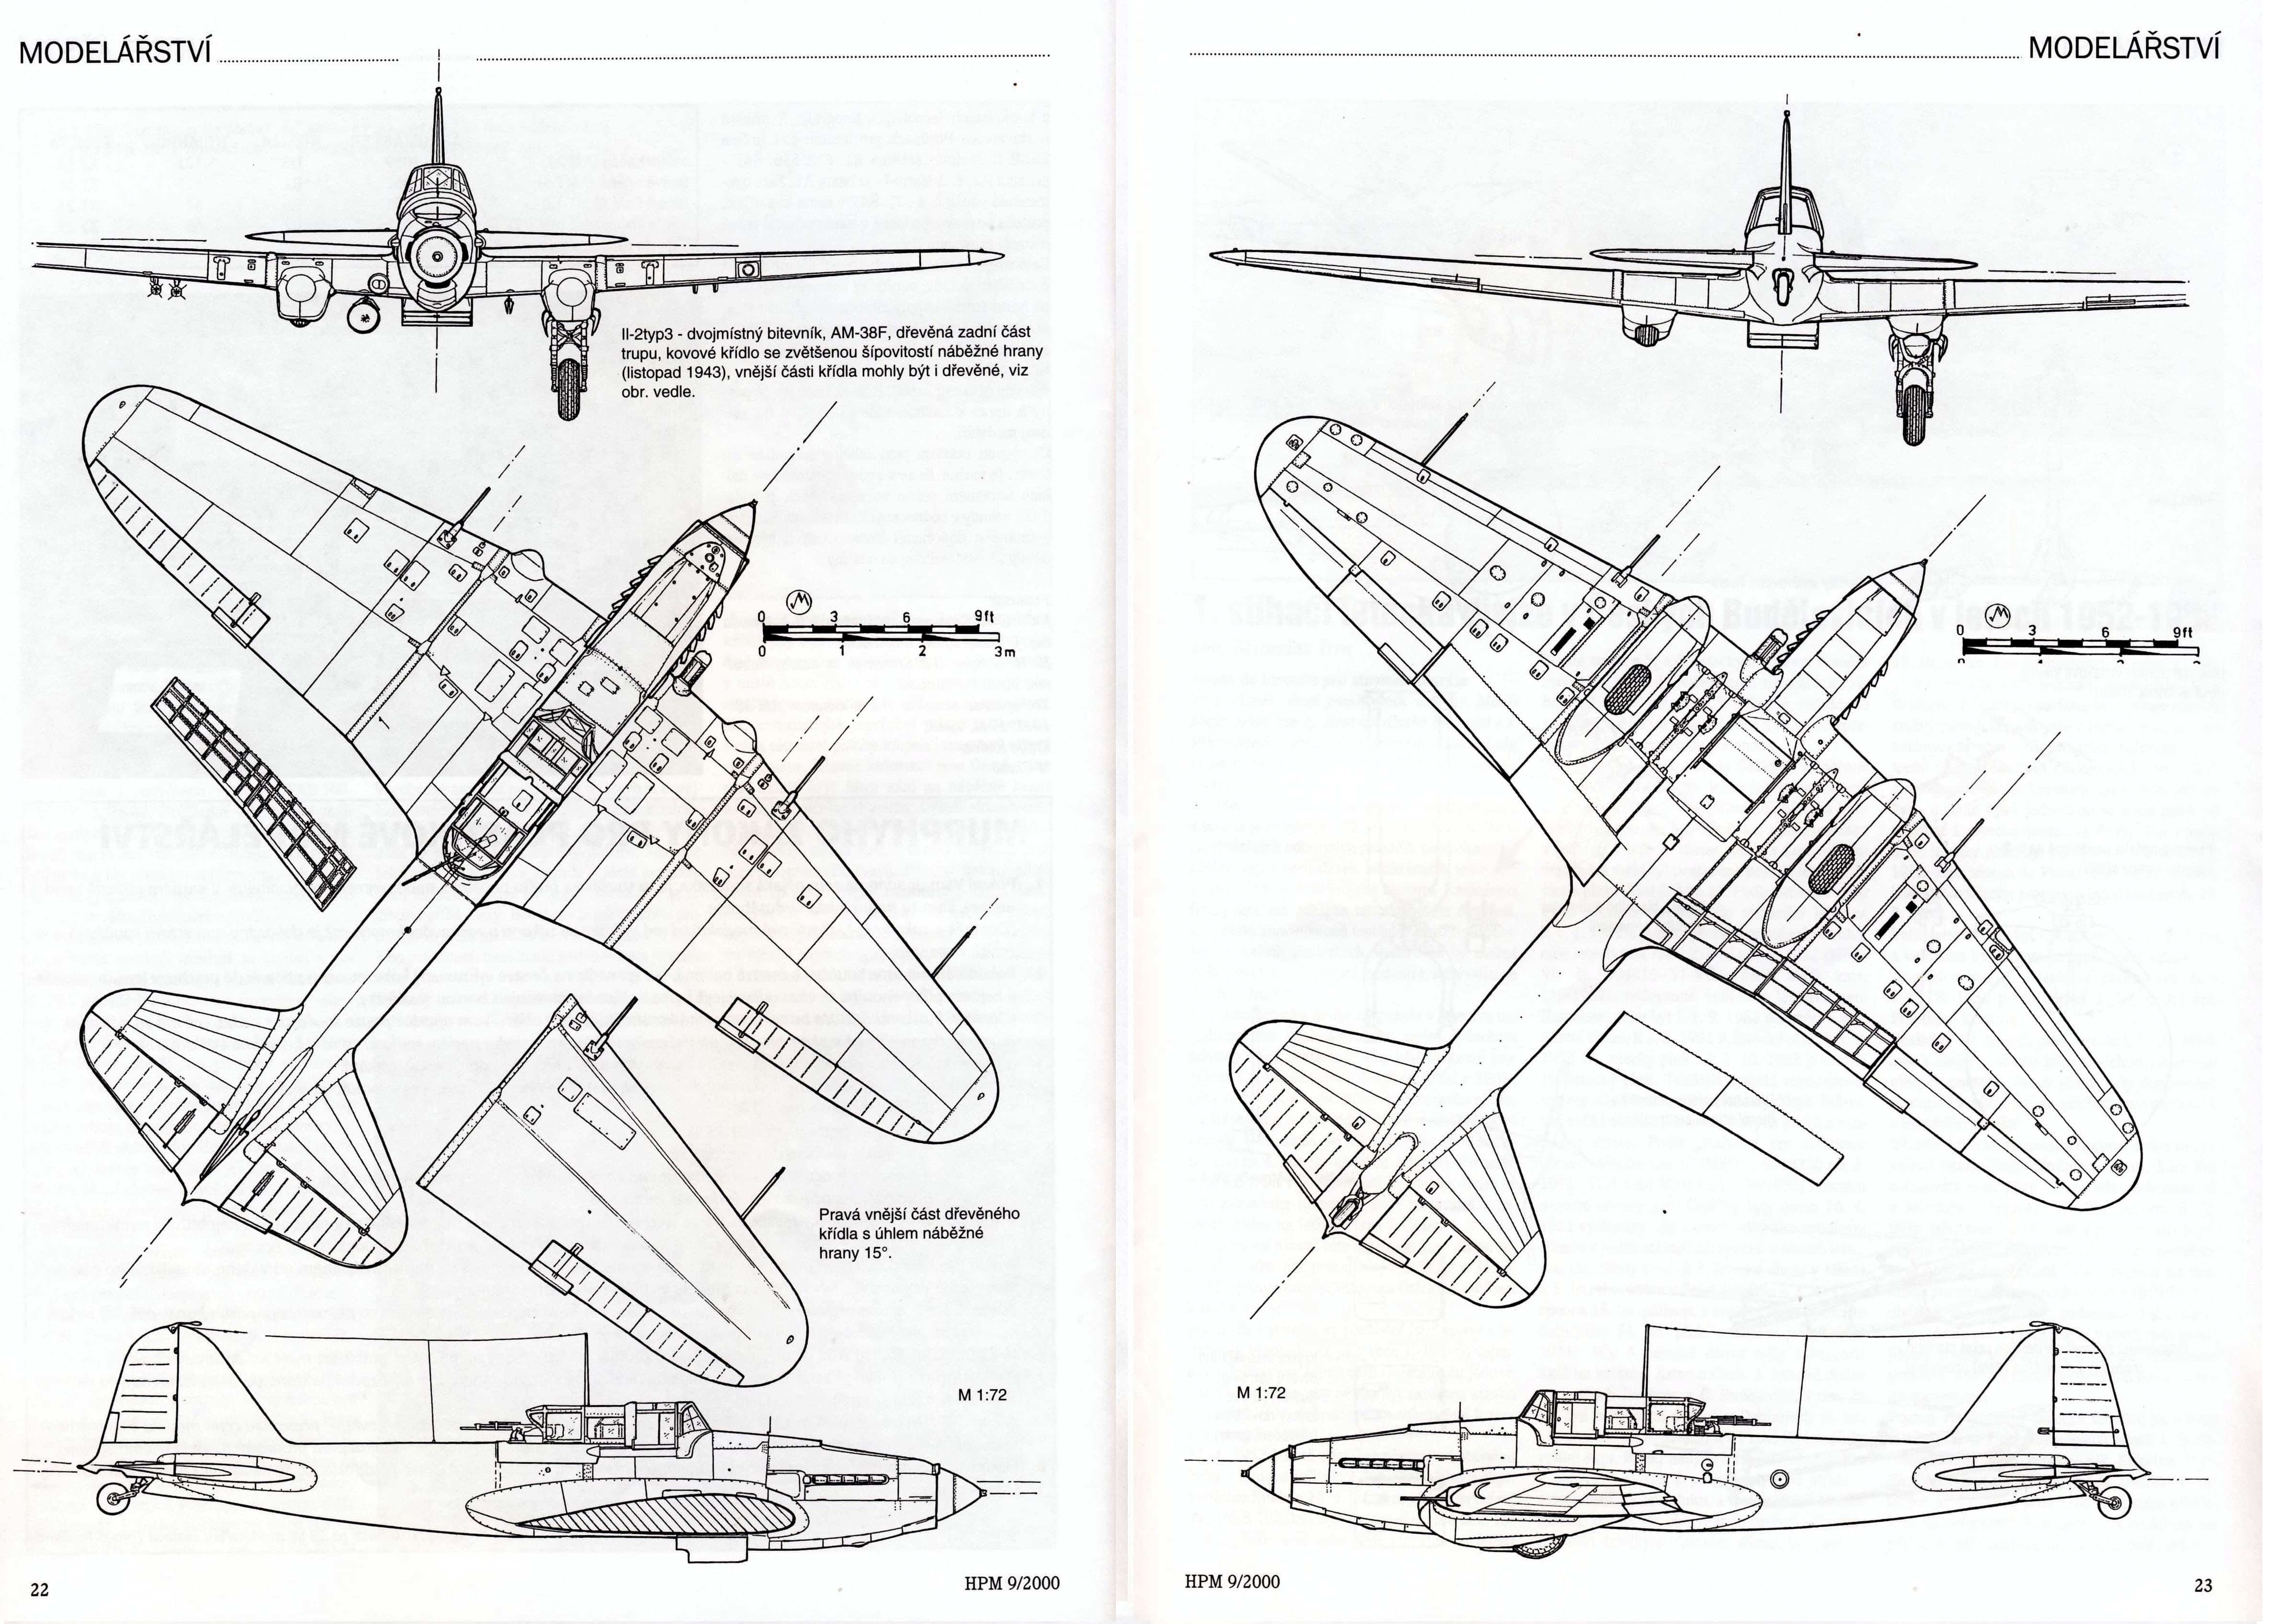 Самолет штурмовик ил-10: технические характеристики и история создания